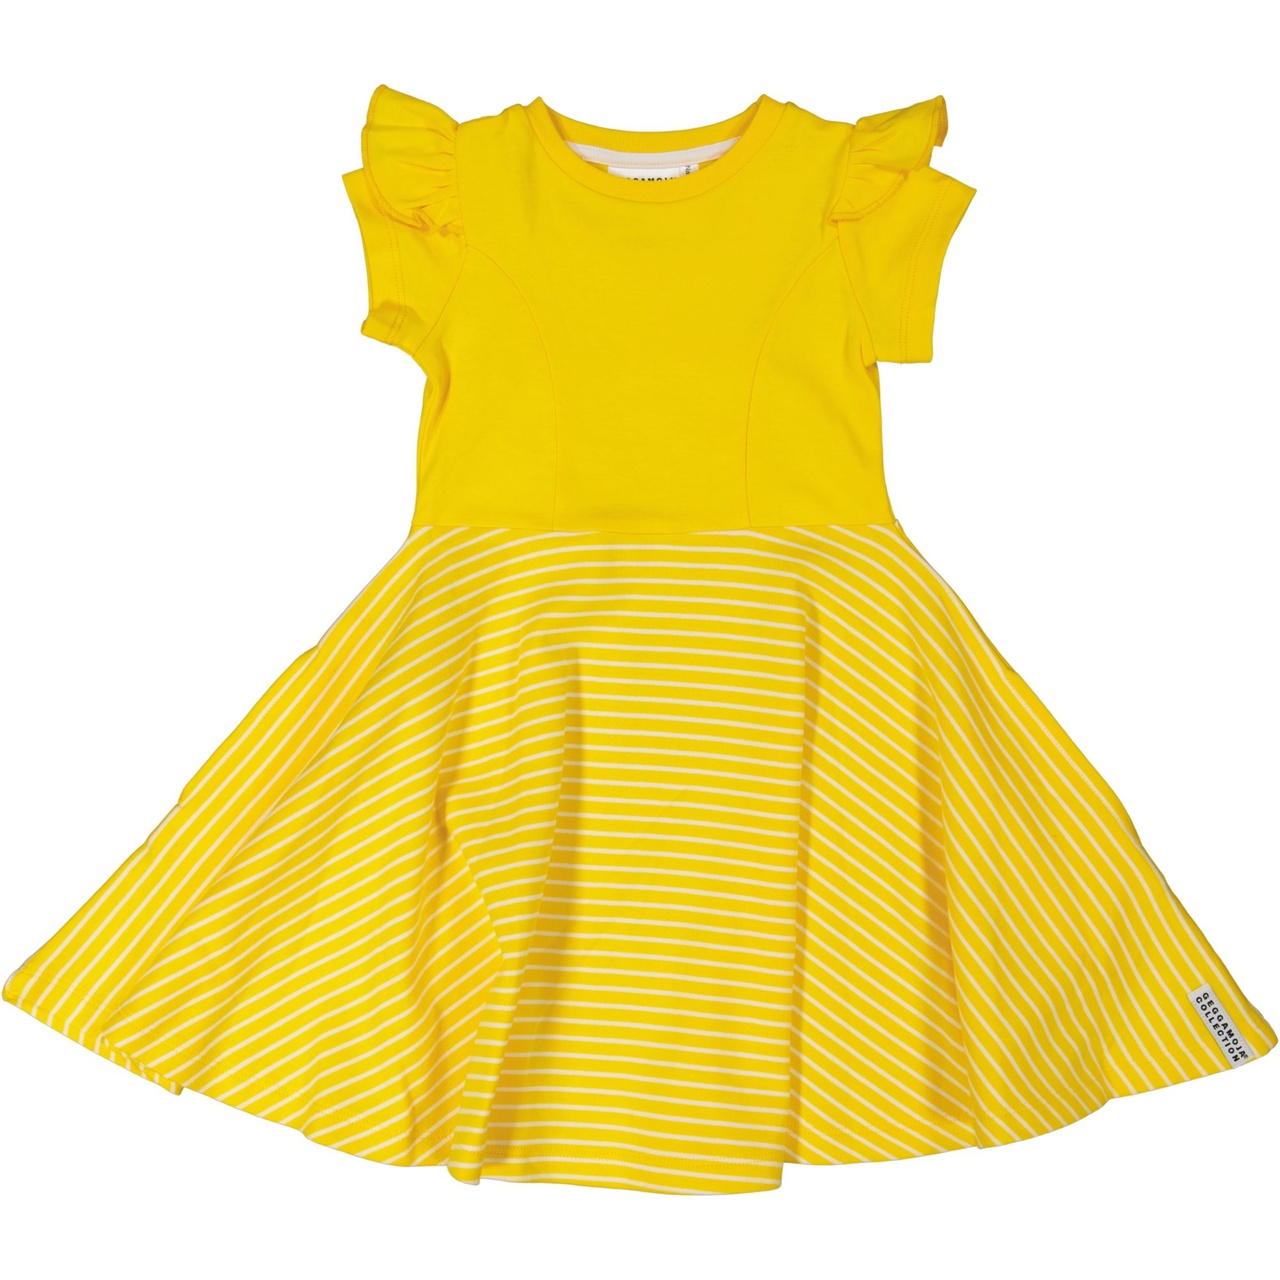 Flared dress Yellow/white  74/80